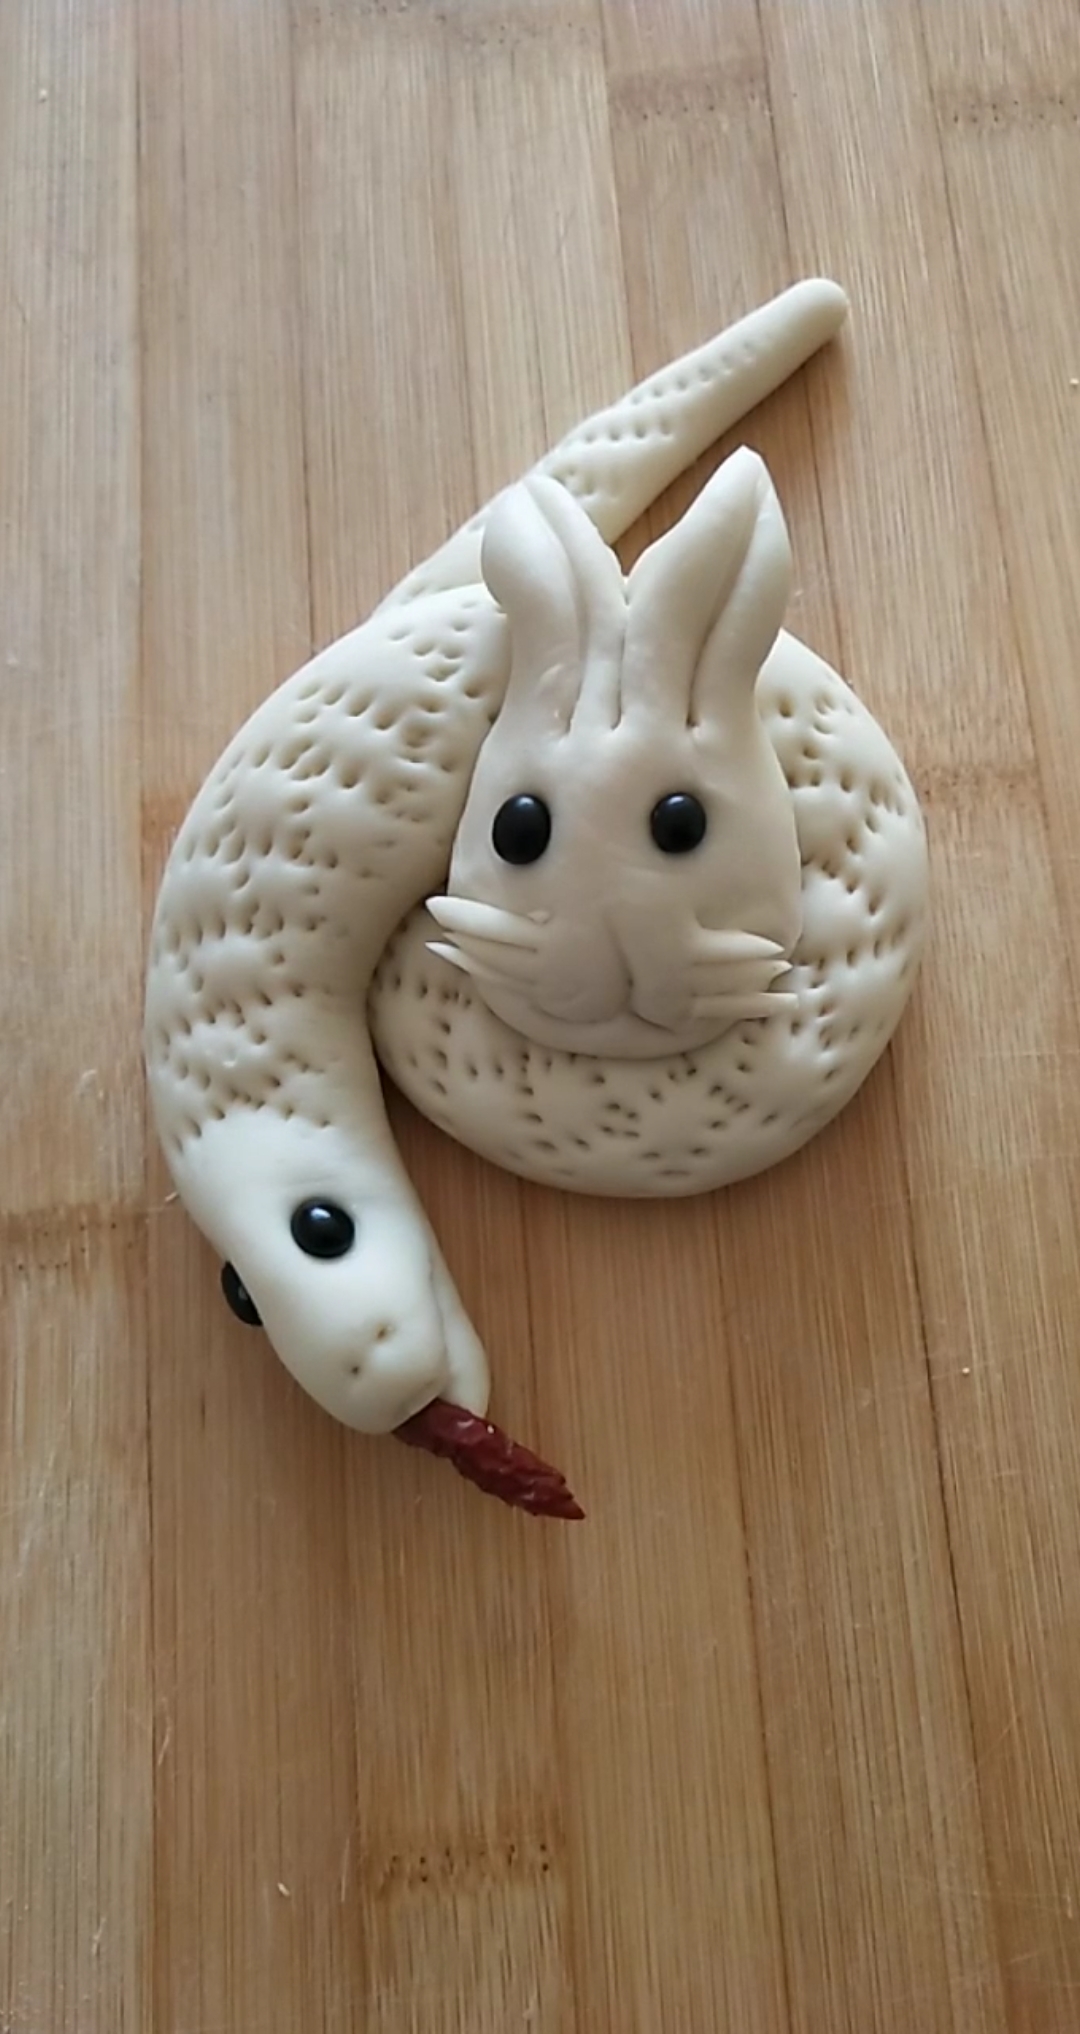 蛇盘兔食物图片